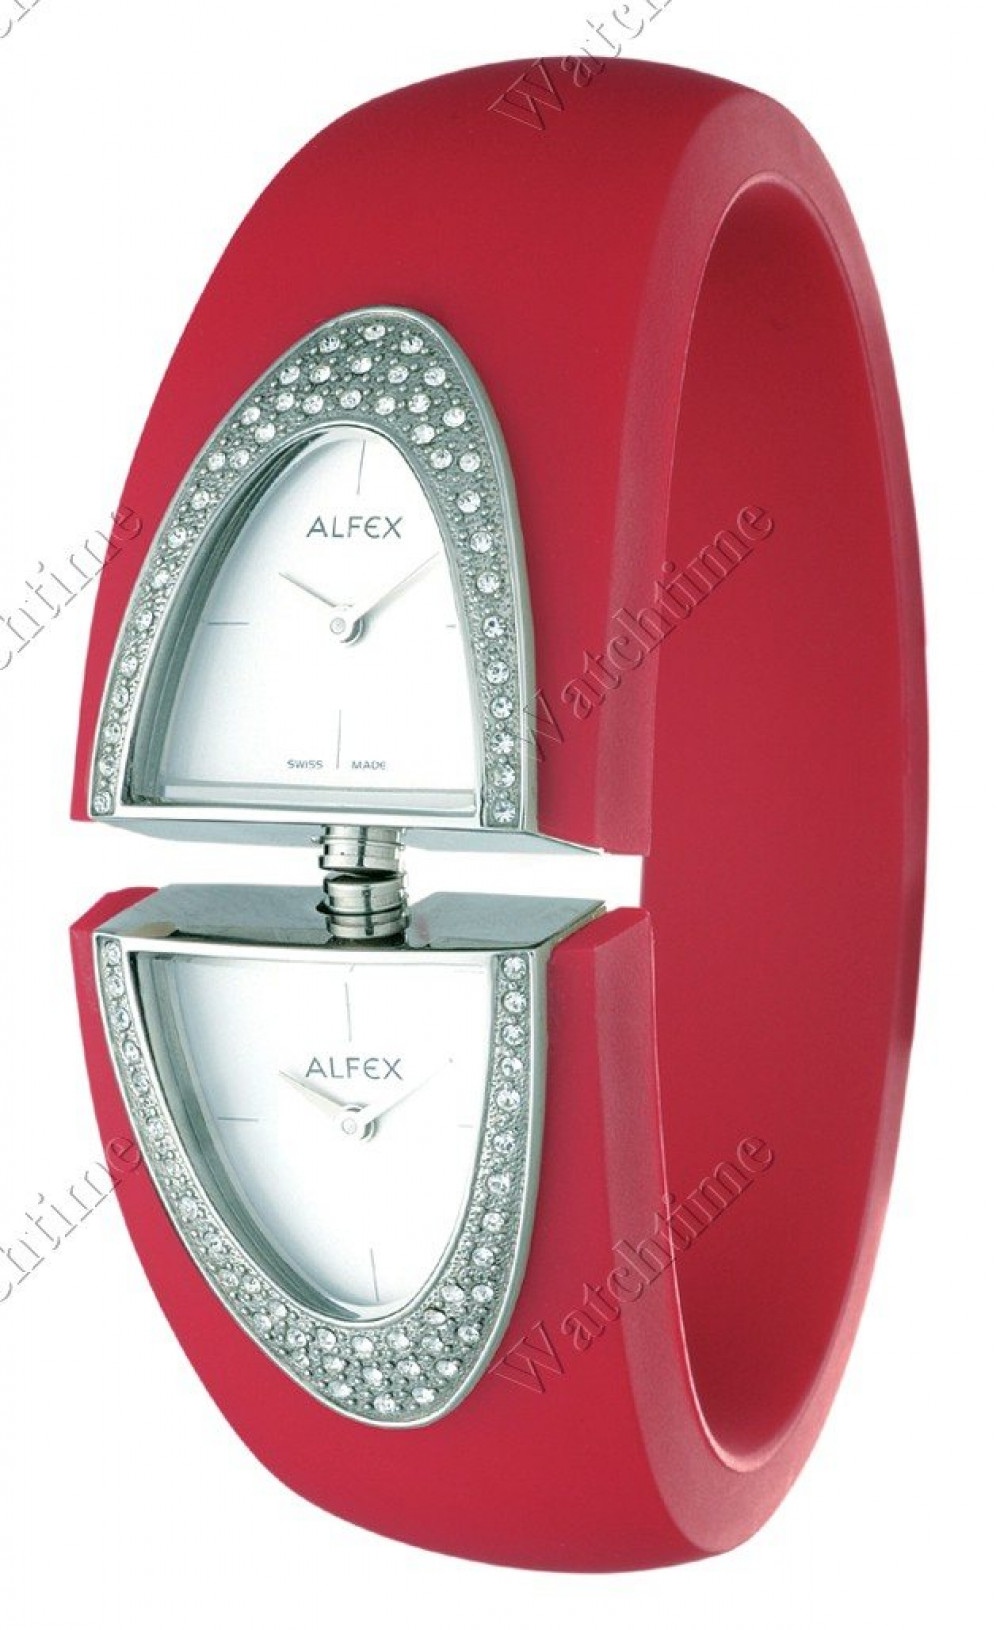 Zegarek firmy Alfex, model Bango Time